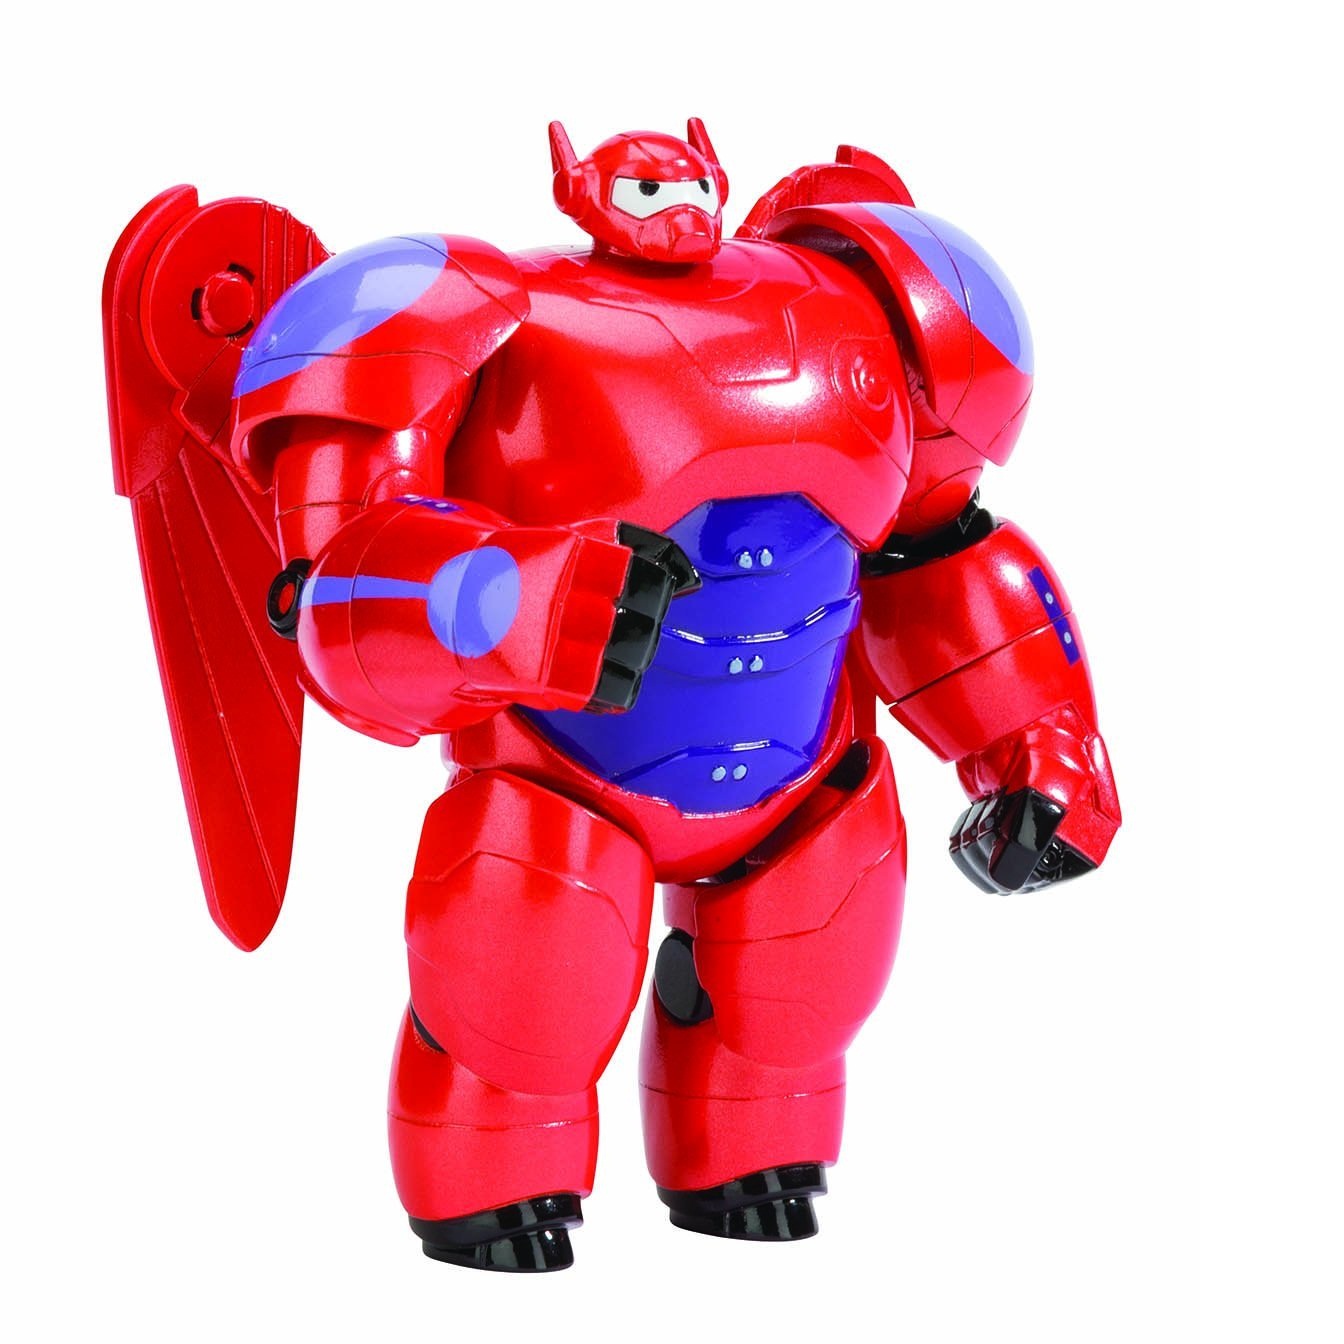 Mô hình siêu anh hùng Baymax - Big Hero 6 Baymax Action Figure